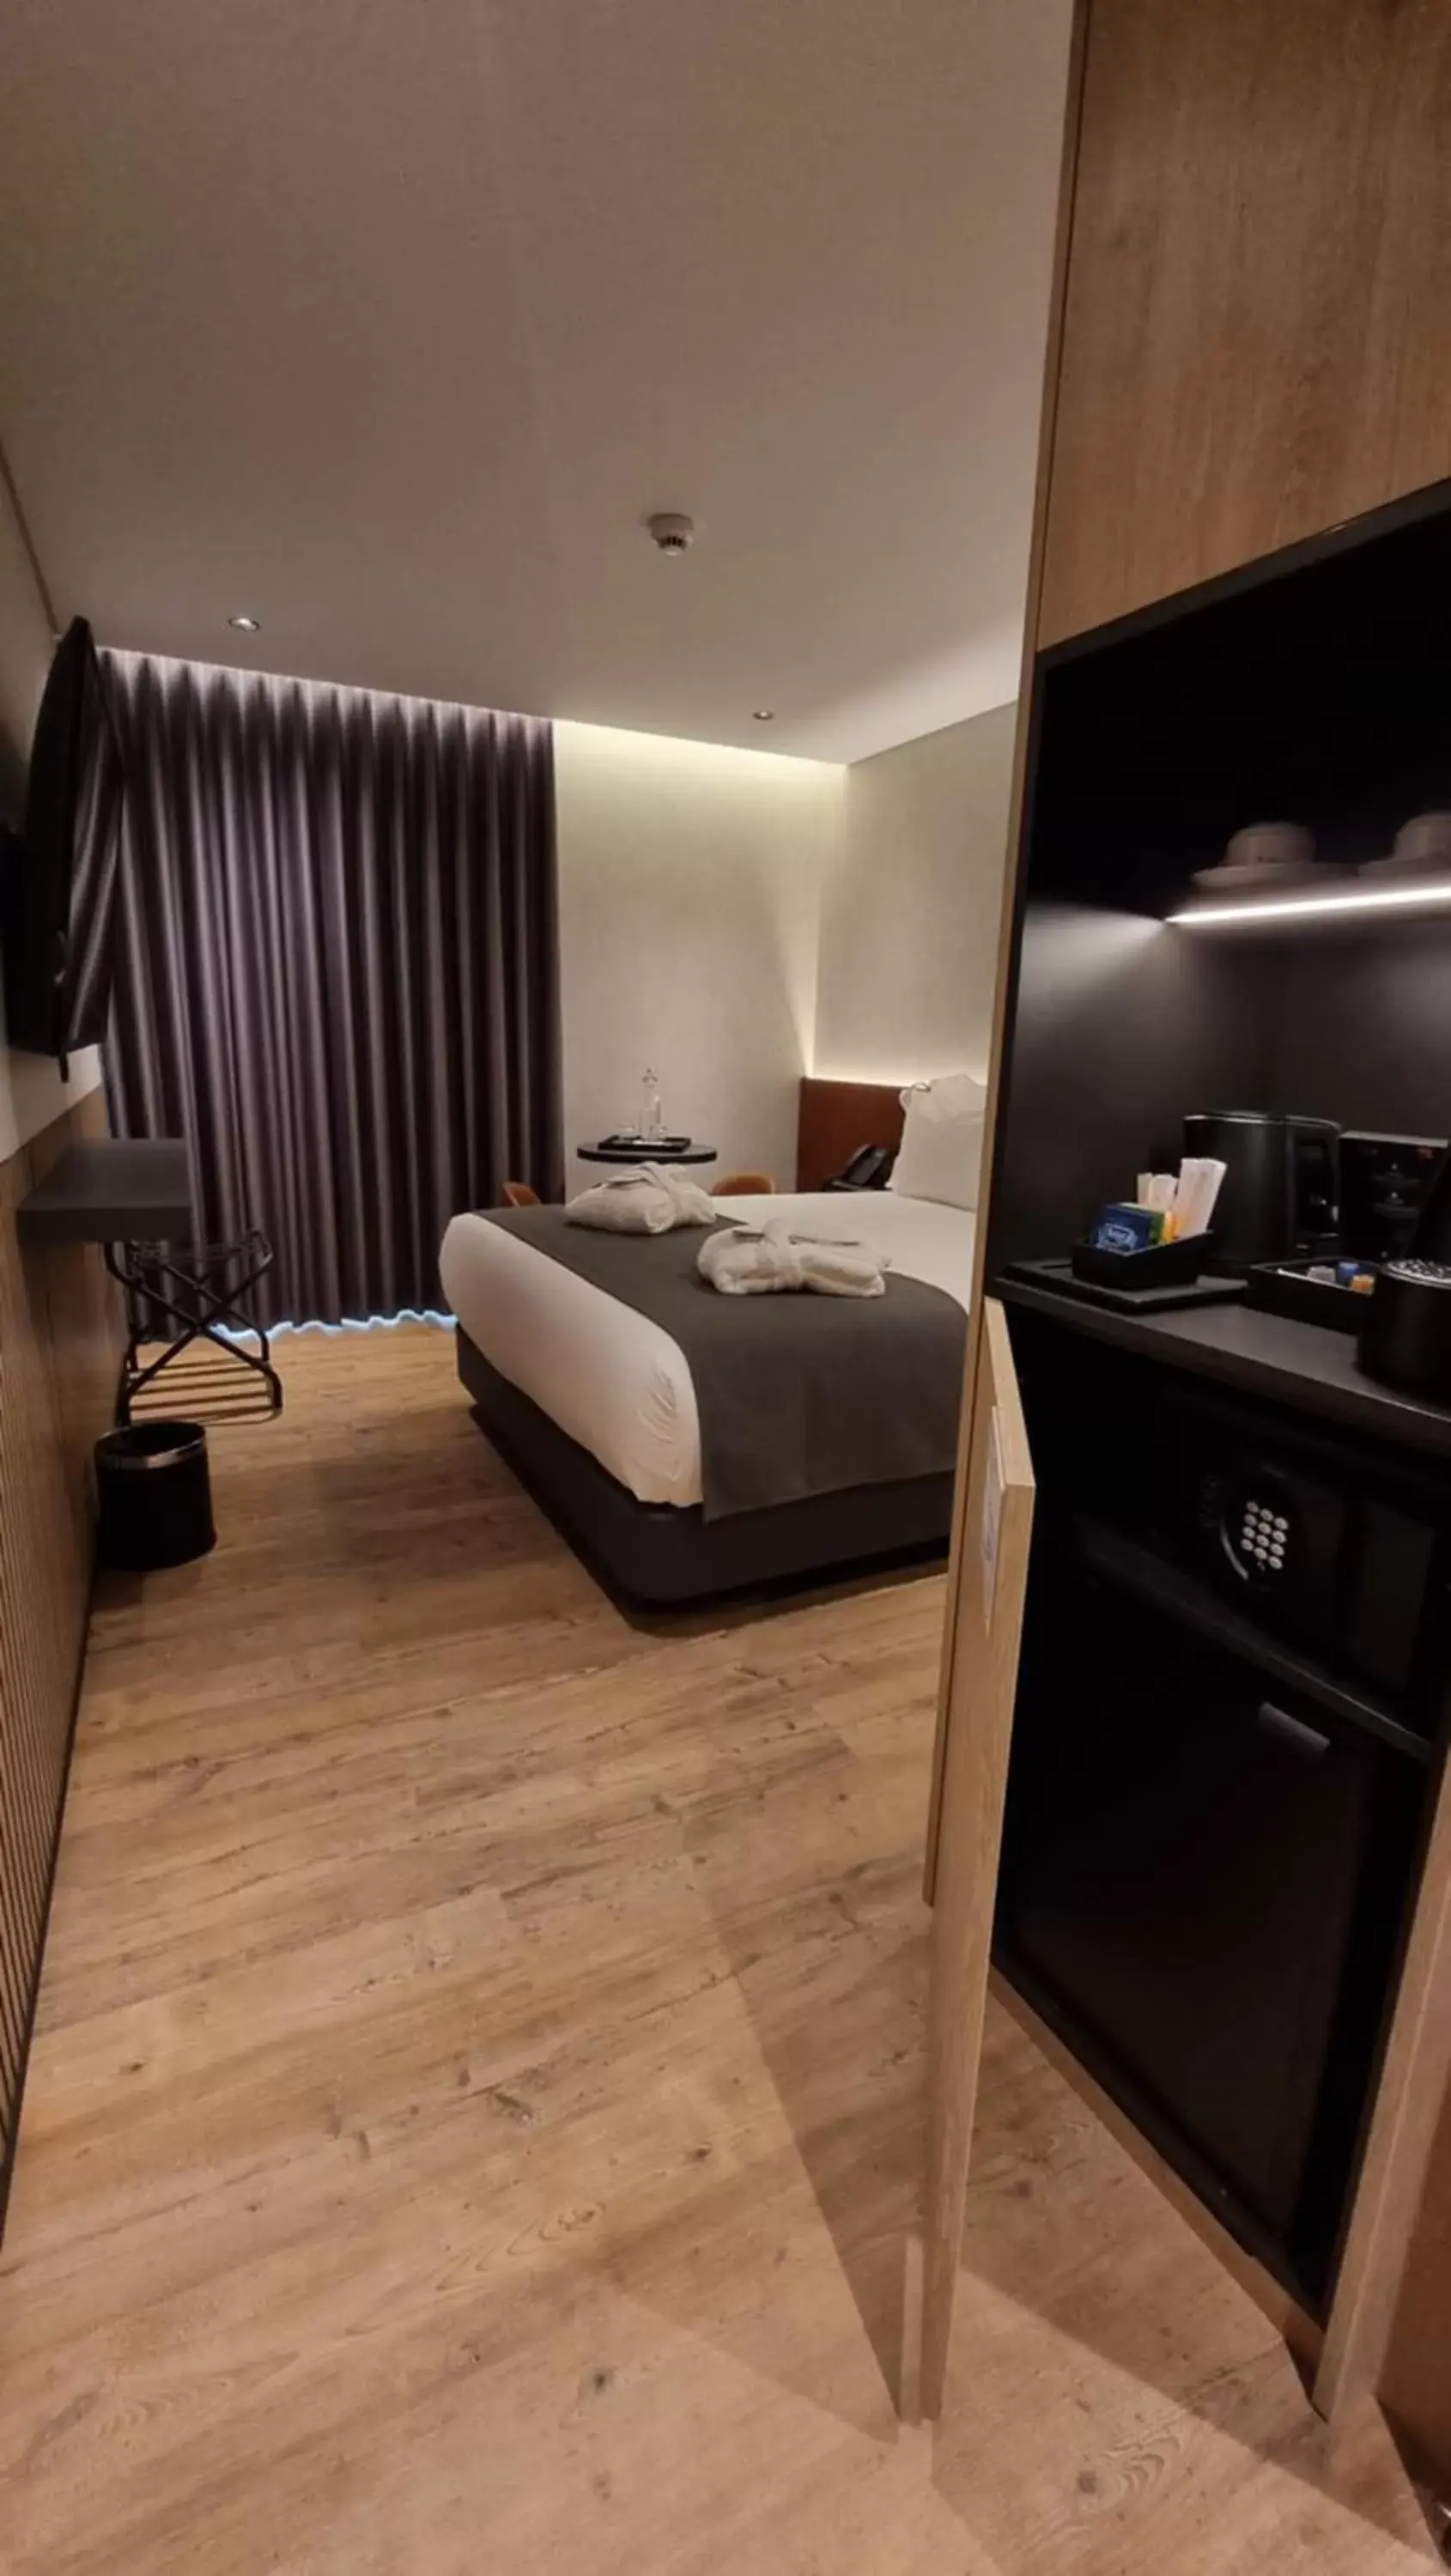 Bedroom in Hotel Principe Avila